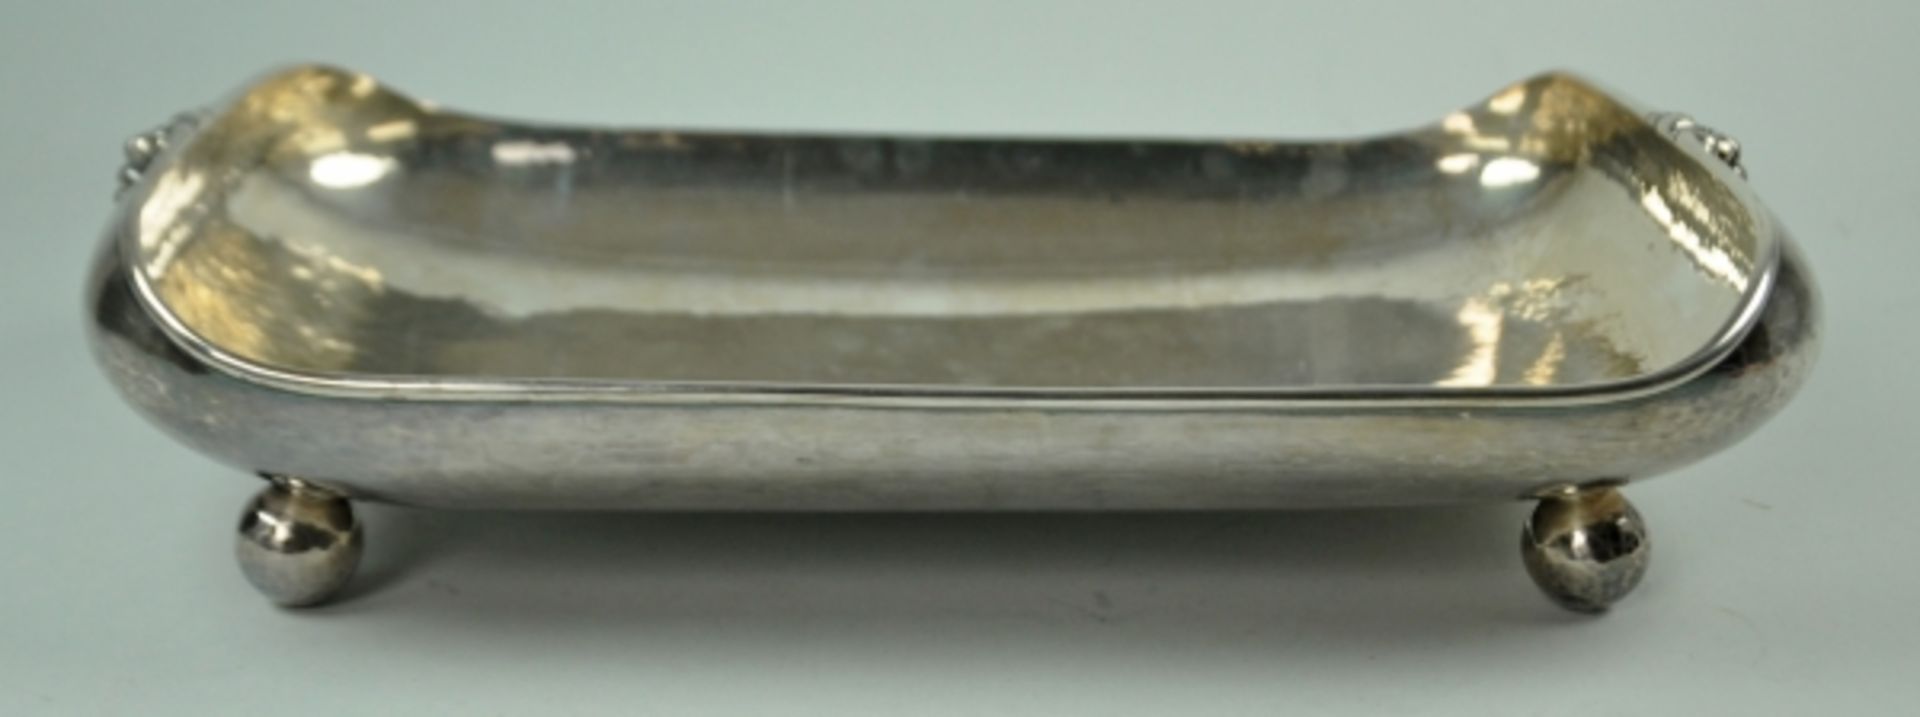 SCHALE rechteckige Form mit abgerundeten Ecken, hochgewölbter Rand, auf vier Kugelfüßen, - Bild 2 aus 3